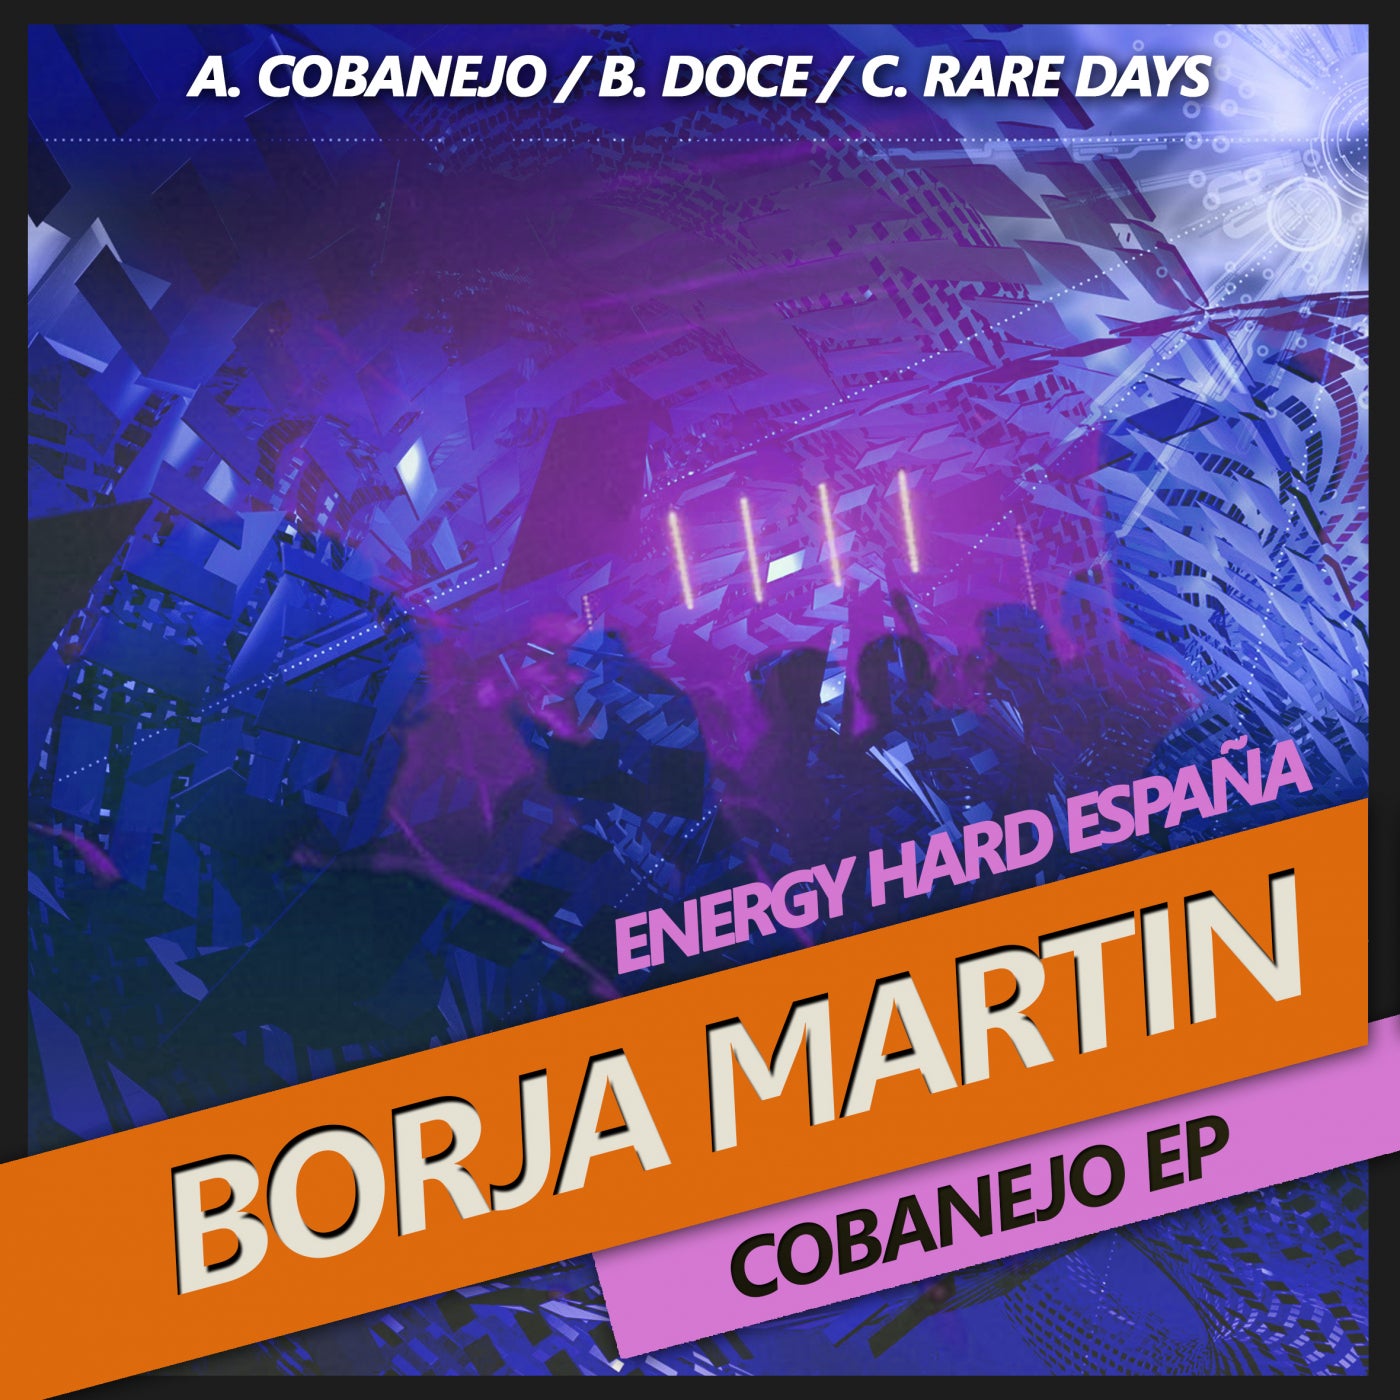 [EHE198] Borja Martin - Cobanejo EP 29d17ebd-d65a-4a82-86b7-2d6b5d765b6f